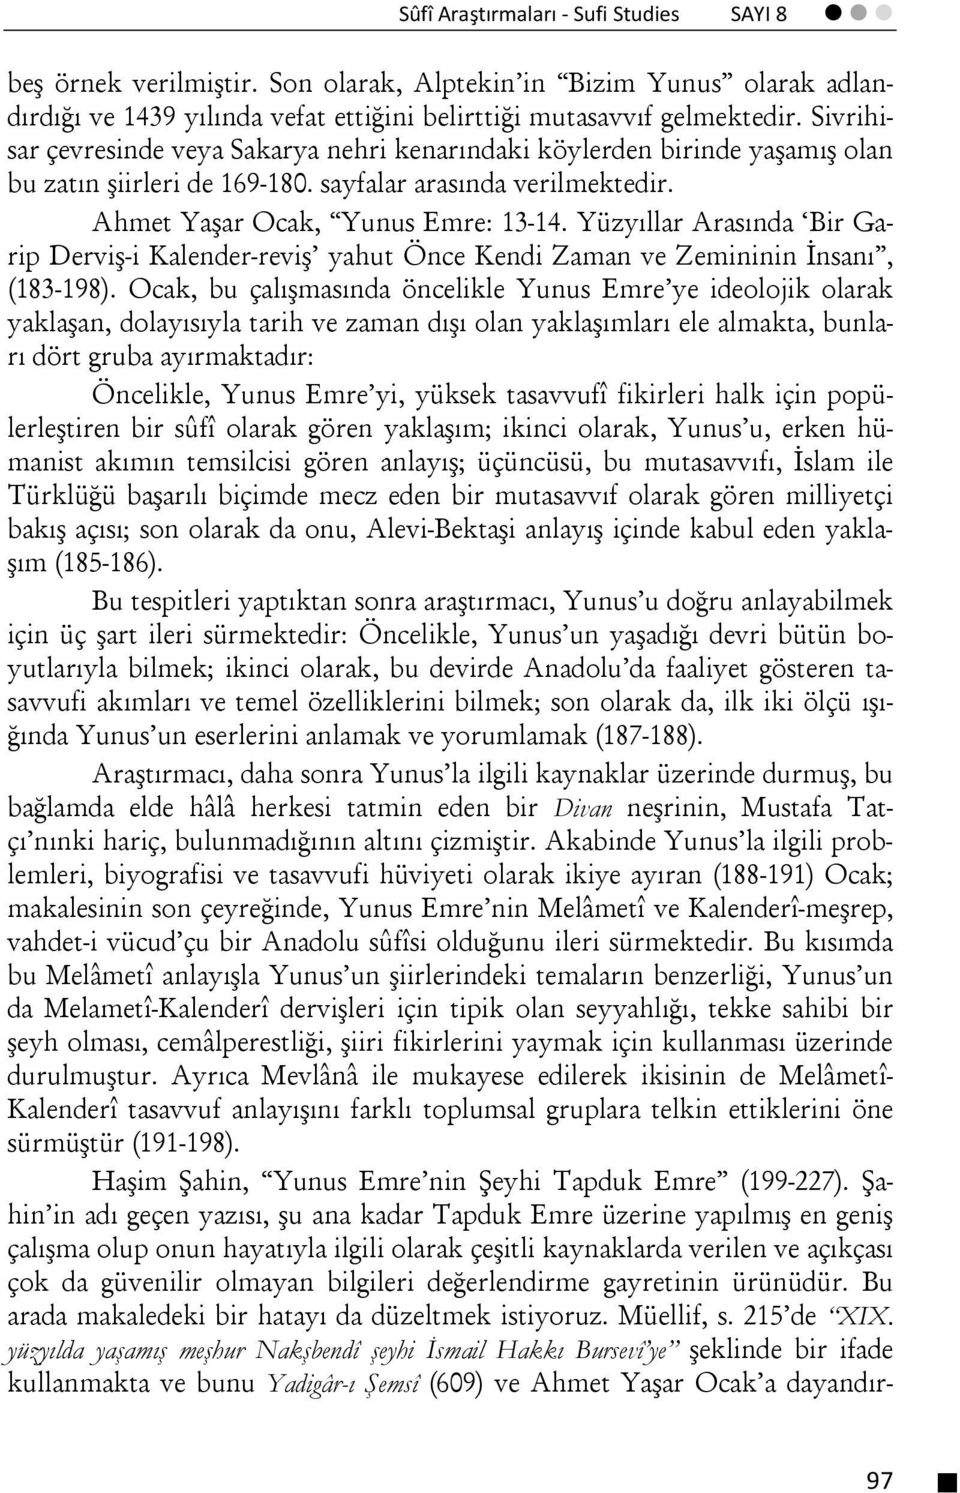 Yüzyıllar Arasında Bir Garip Derviş-i Kalender-reviş yahut Önce Kendi Zaman ve Zemininin İnsanı, (183-198).